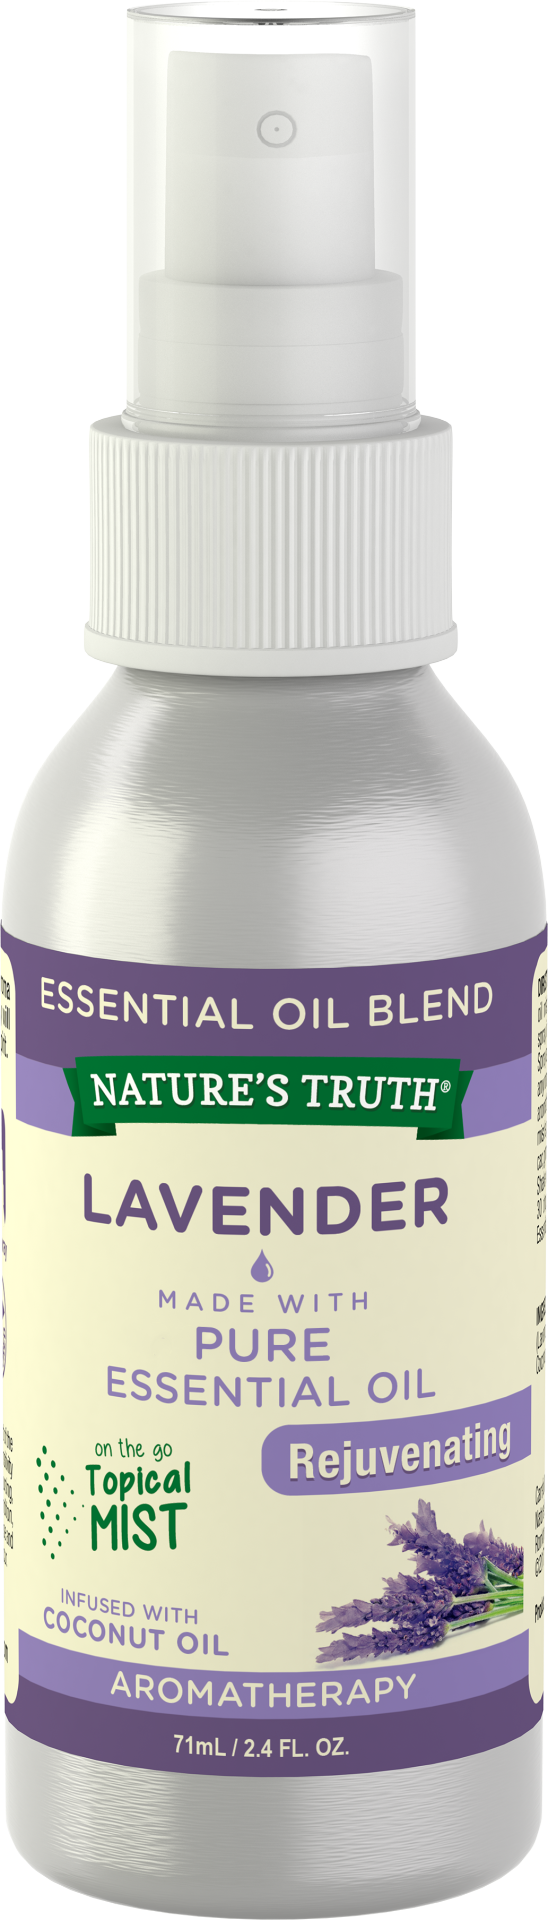 Natures Truth Essential Oil Blend, Lavender, Rejuvenating - 71 ml